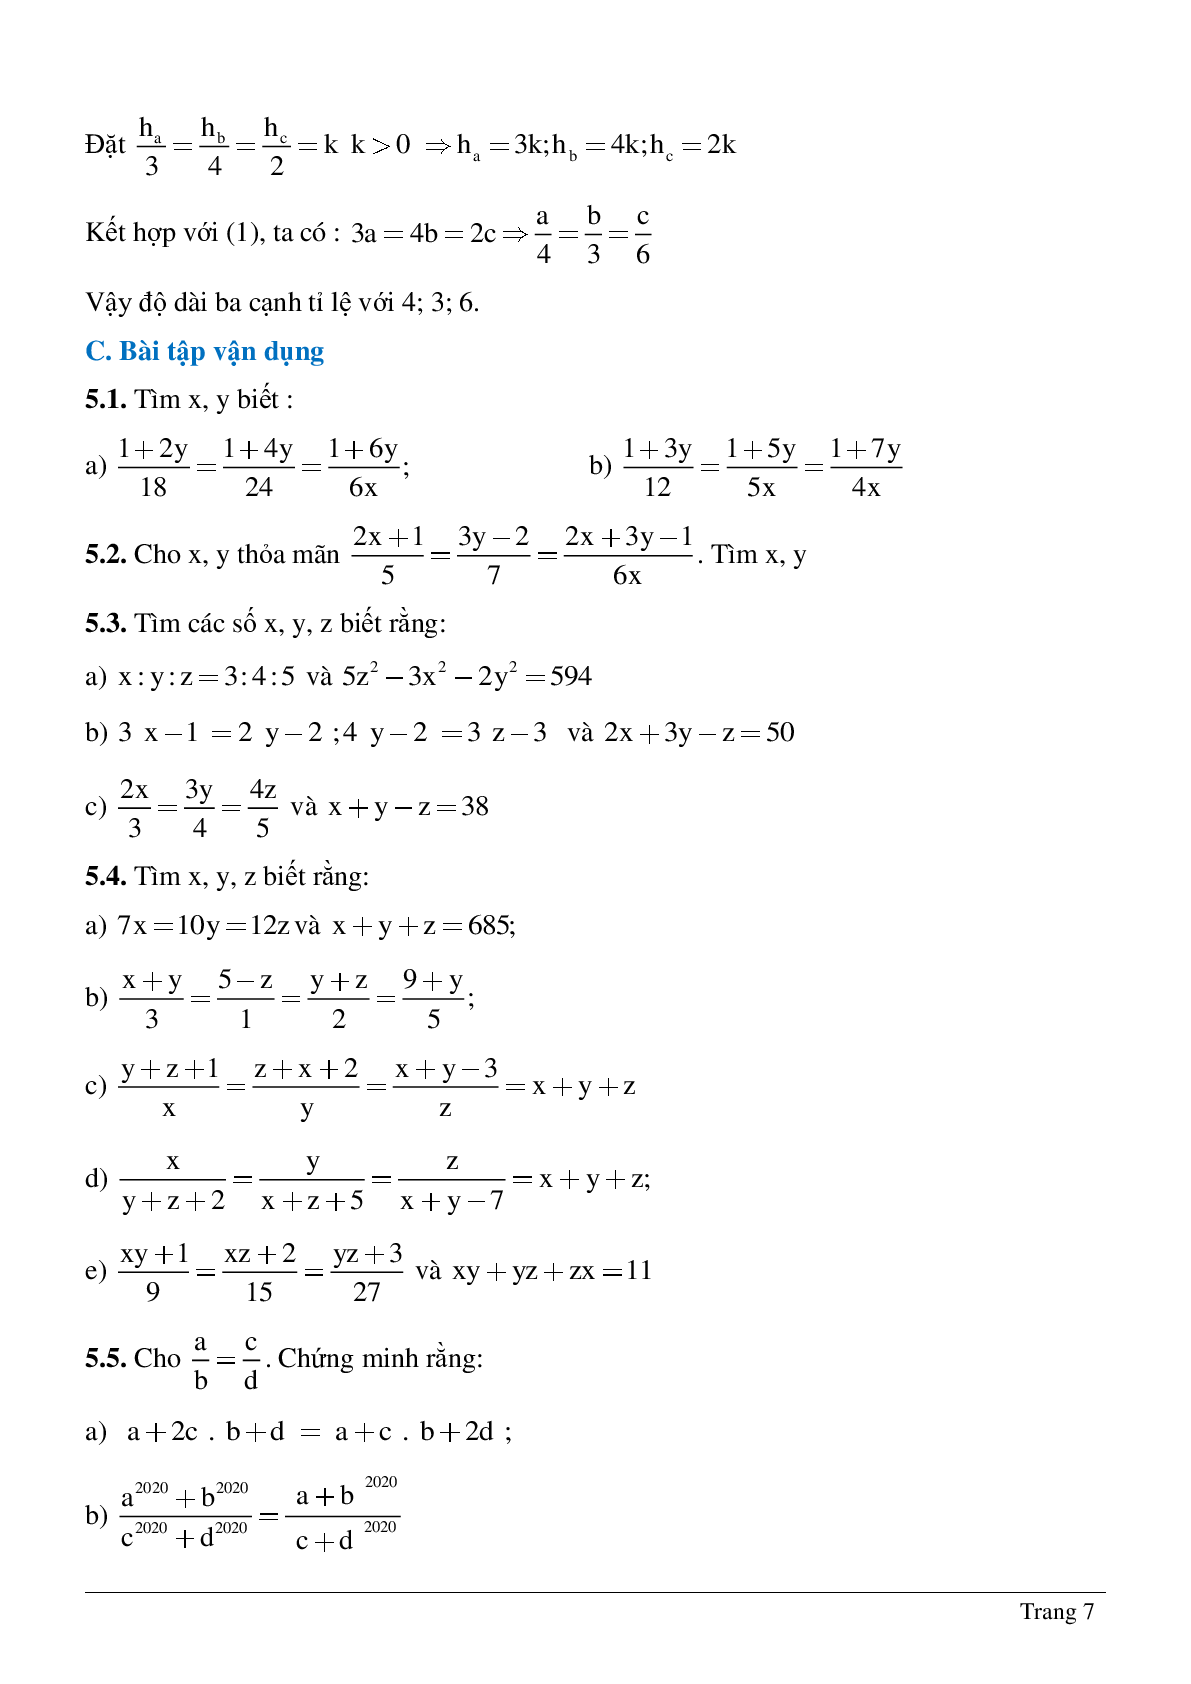 Bài tập chọn lọc về Tỉ lệ thức - Tính chất của dãy tỉ số bằng nhau có lời giải (trang 7)